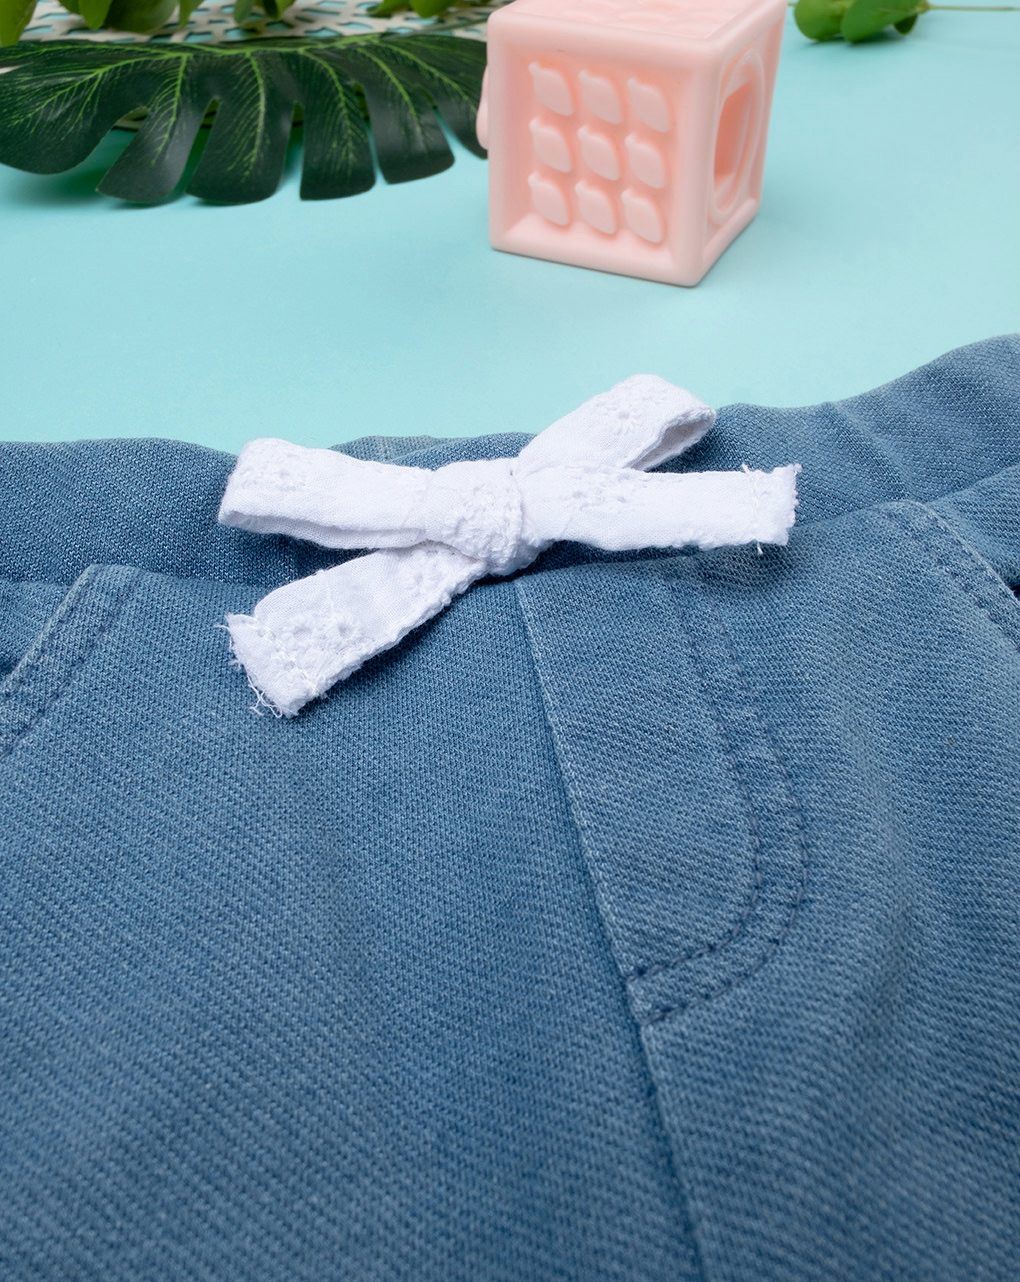 βρεφικό τζιν παντελόνι μπλε με φιογκάκι για κορίτσι - Prénatal